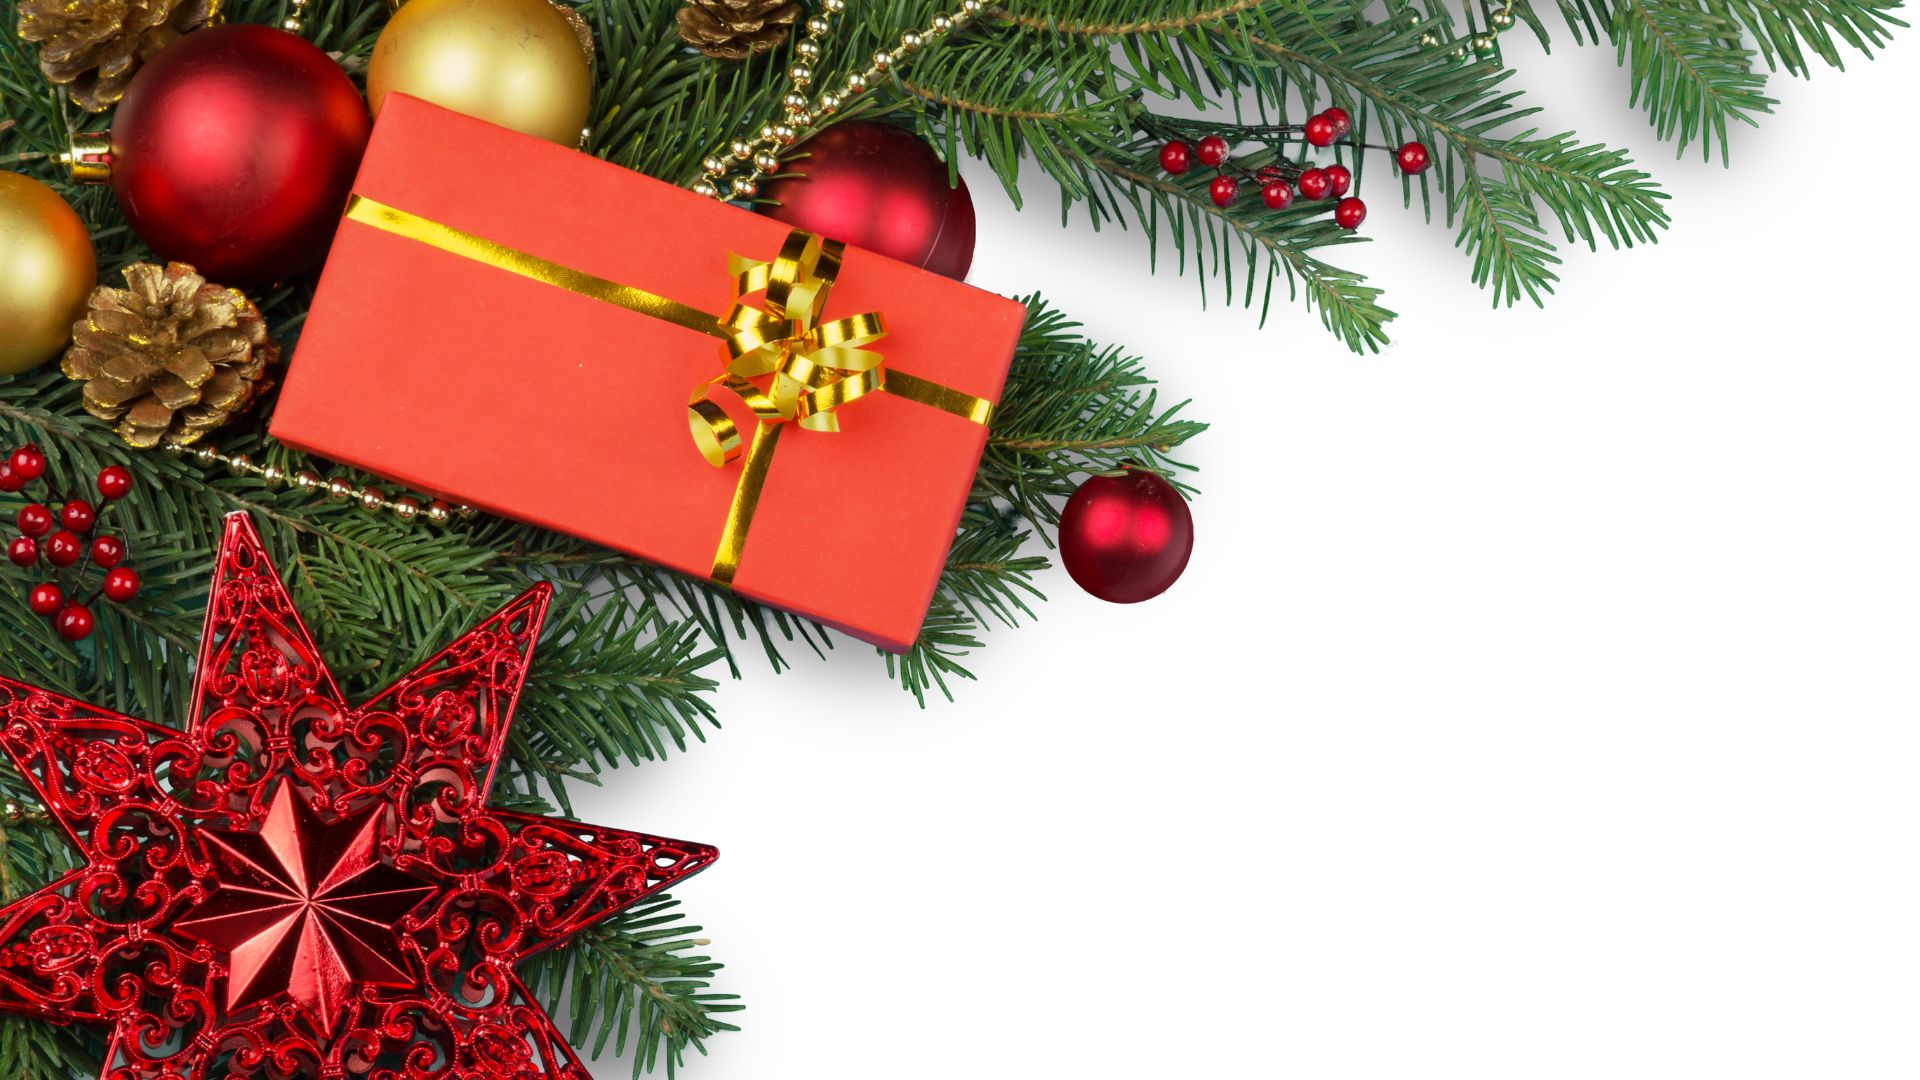 Imagem de fundo branco. O lado esquerdo da mesma traz um arranjo de natal nas cores verde, vermelho e dourado e uma caixa de presente na cor vermelho com laço dourado.